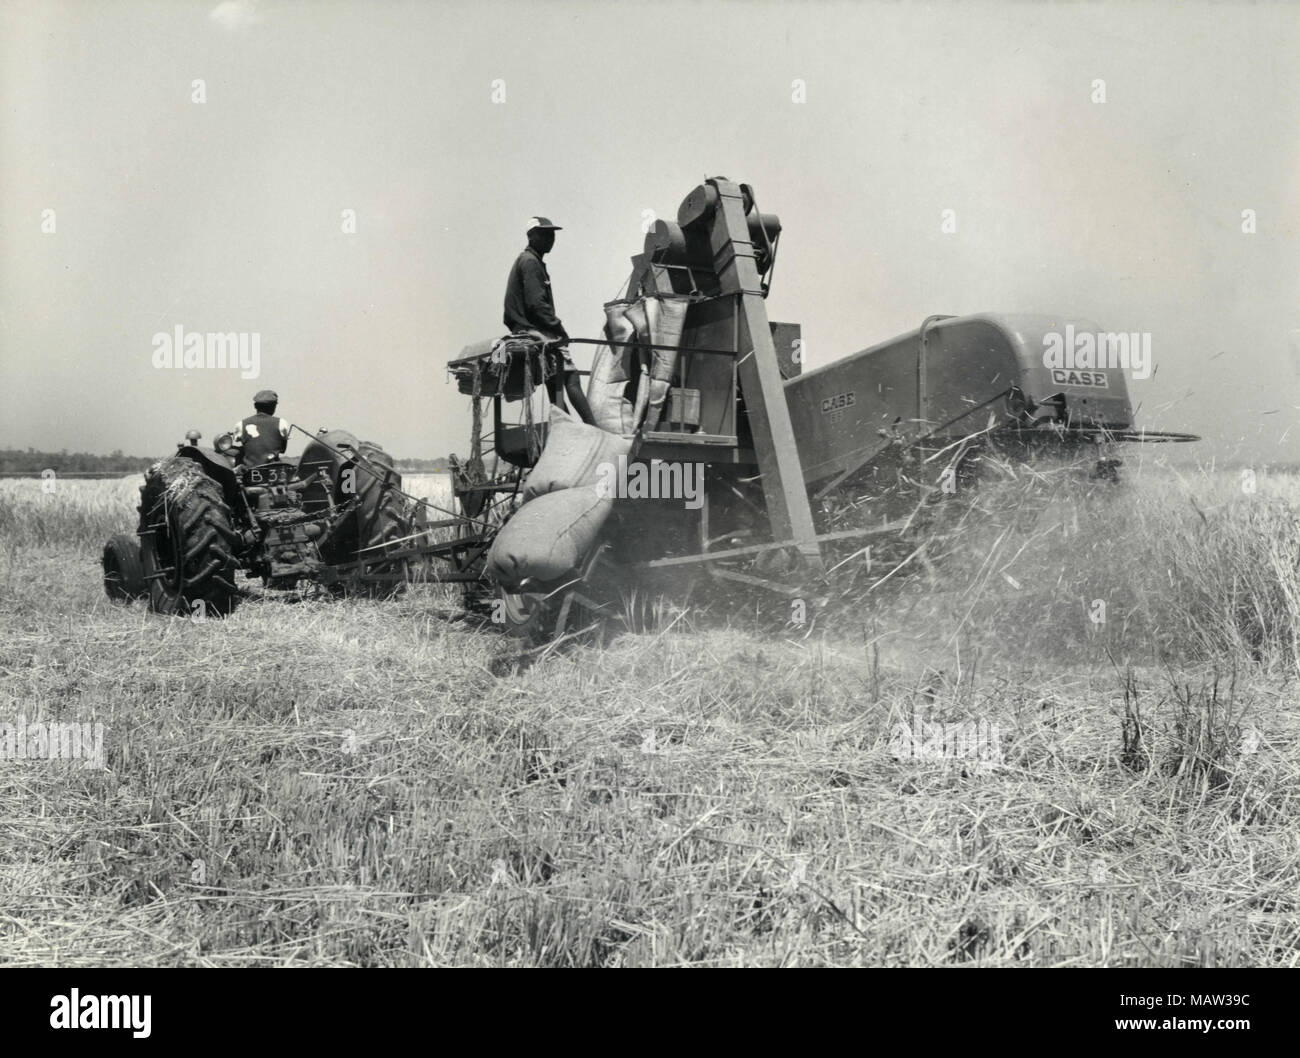 Les hommes qui travaillent à la récolte avec une moissonneuse, confiance, sélection de Rhodésie Polder pilote de Kafue en Zambie, la Rhodésie du Sud, 1957 Banque D'Images